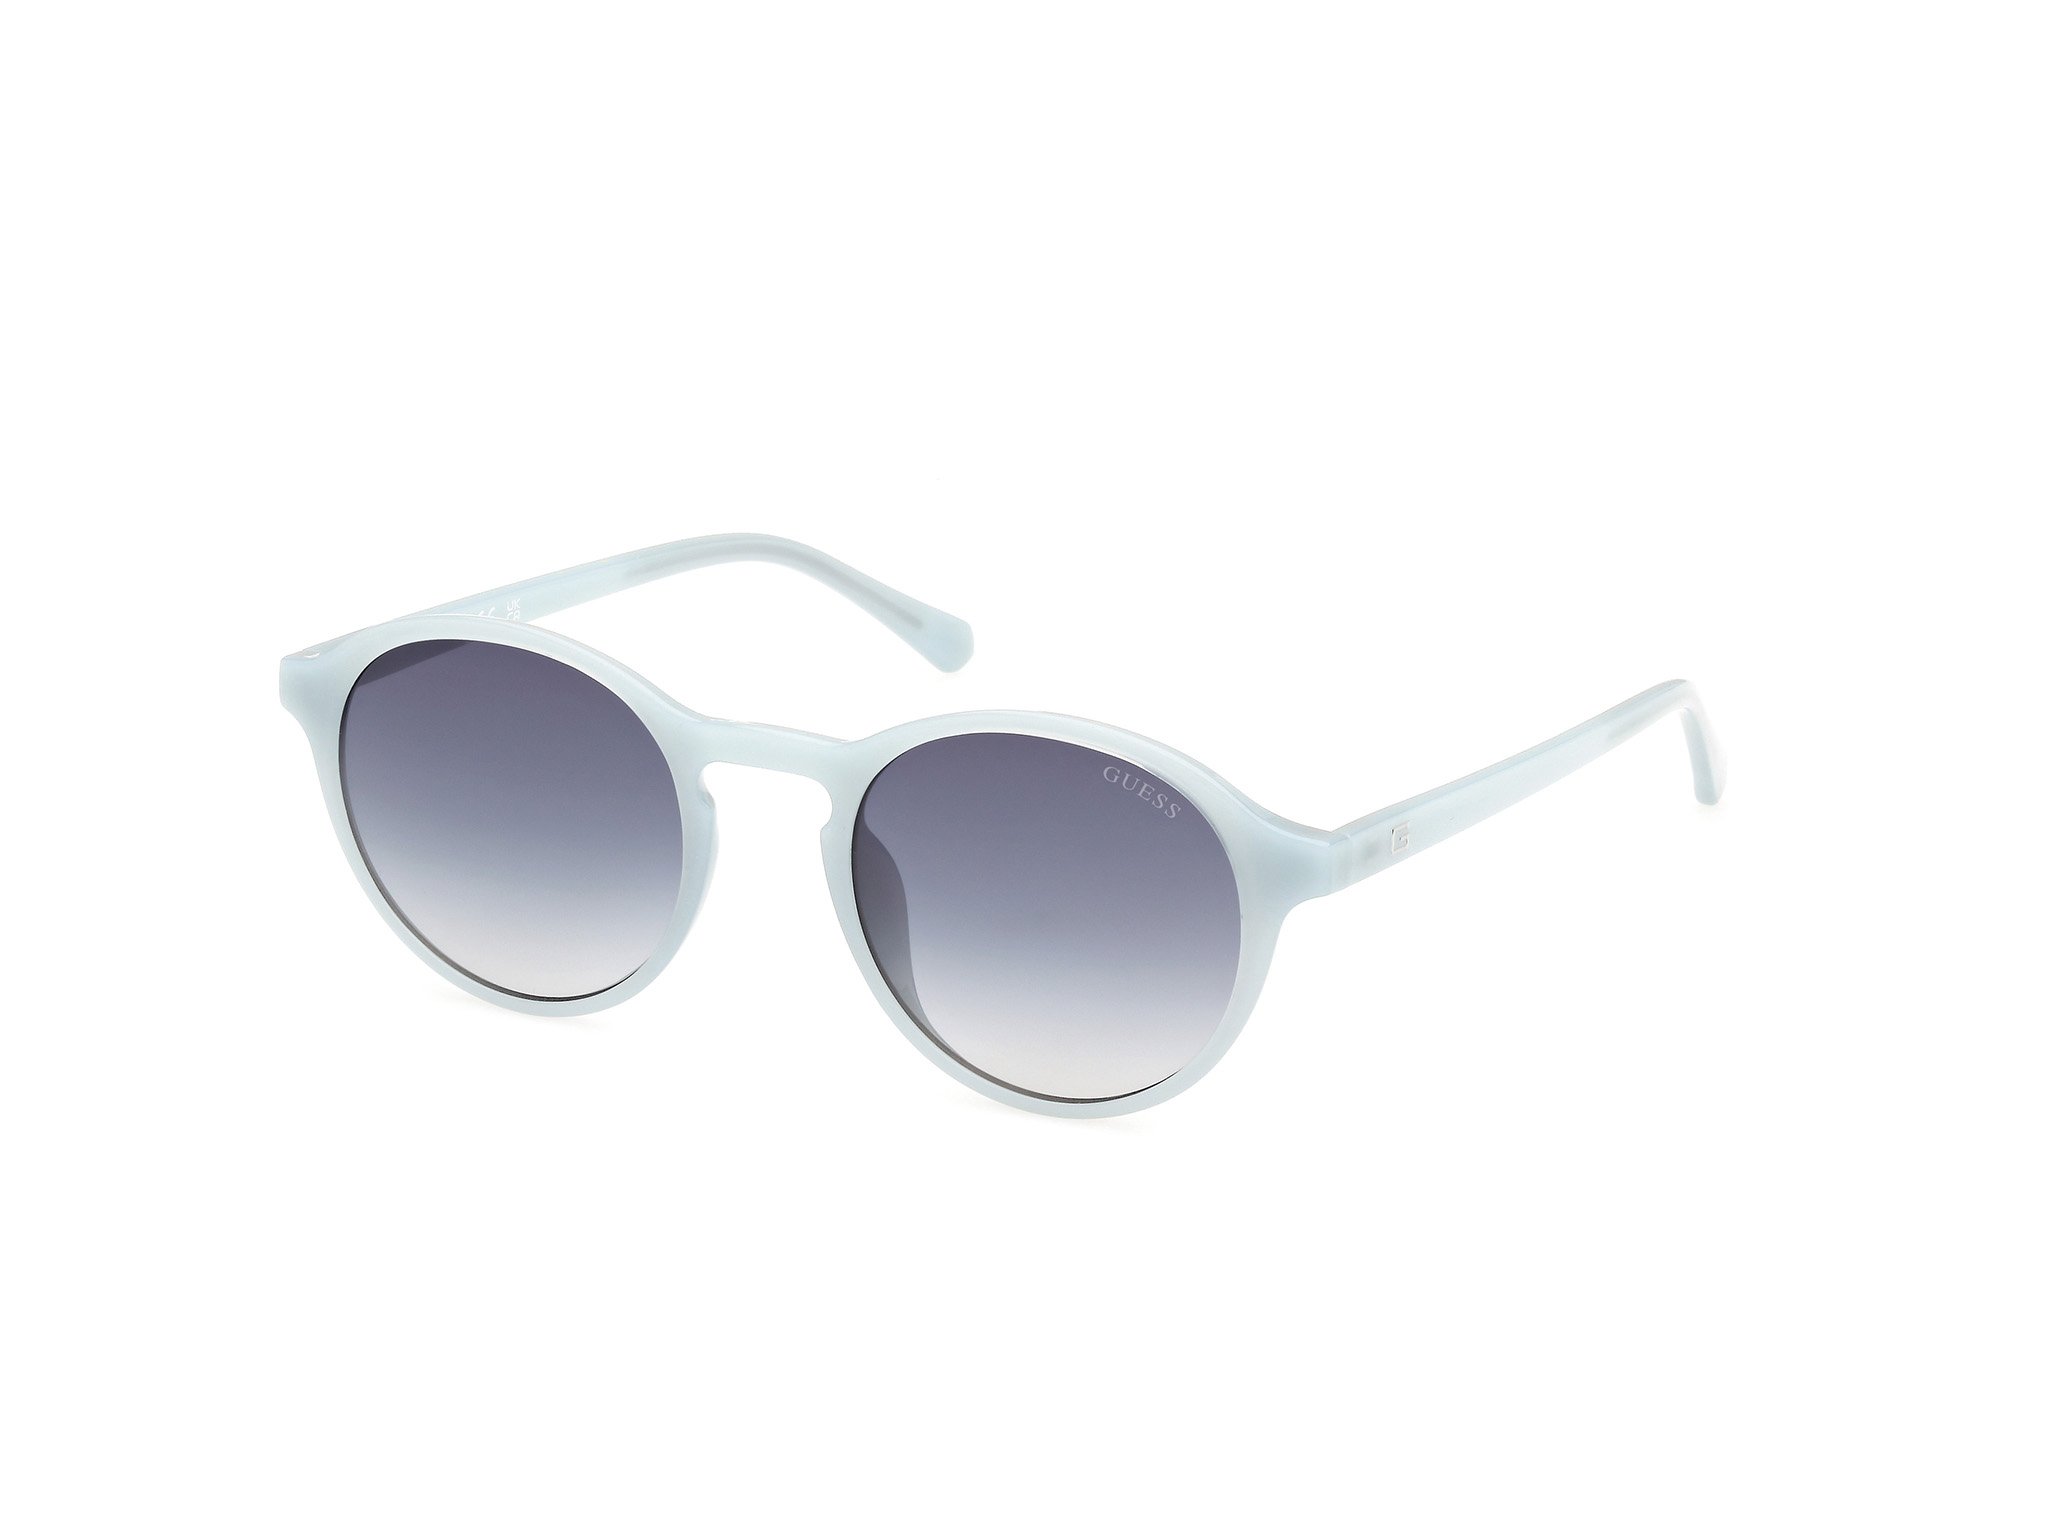 Das Bild zeigt die Sonnenbrille GU00062 84W von der Marke Guess in Hellblau.